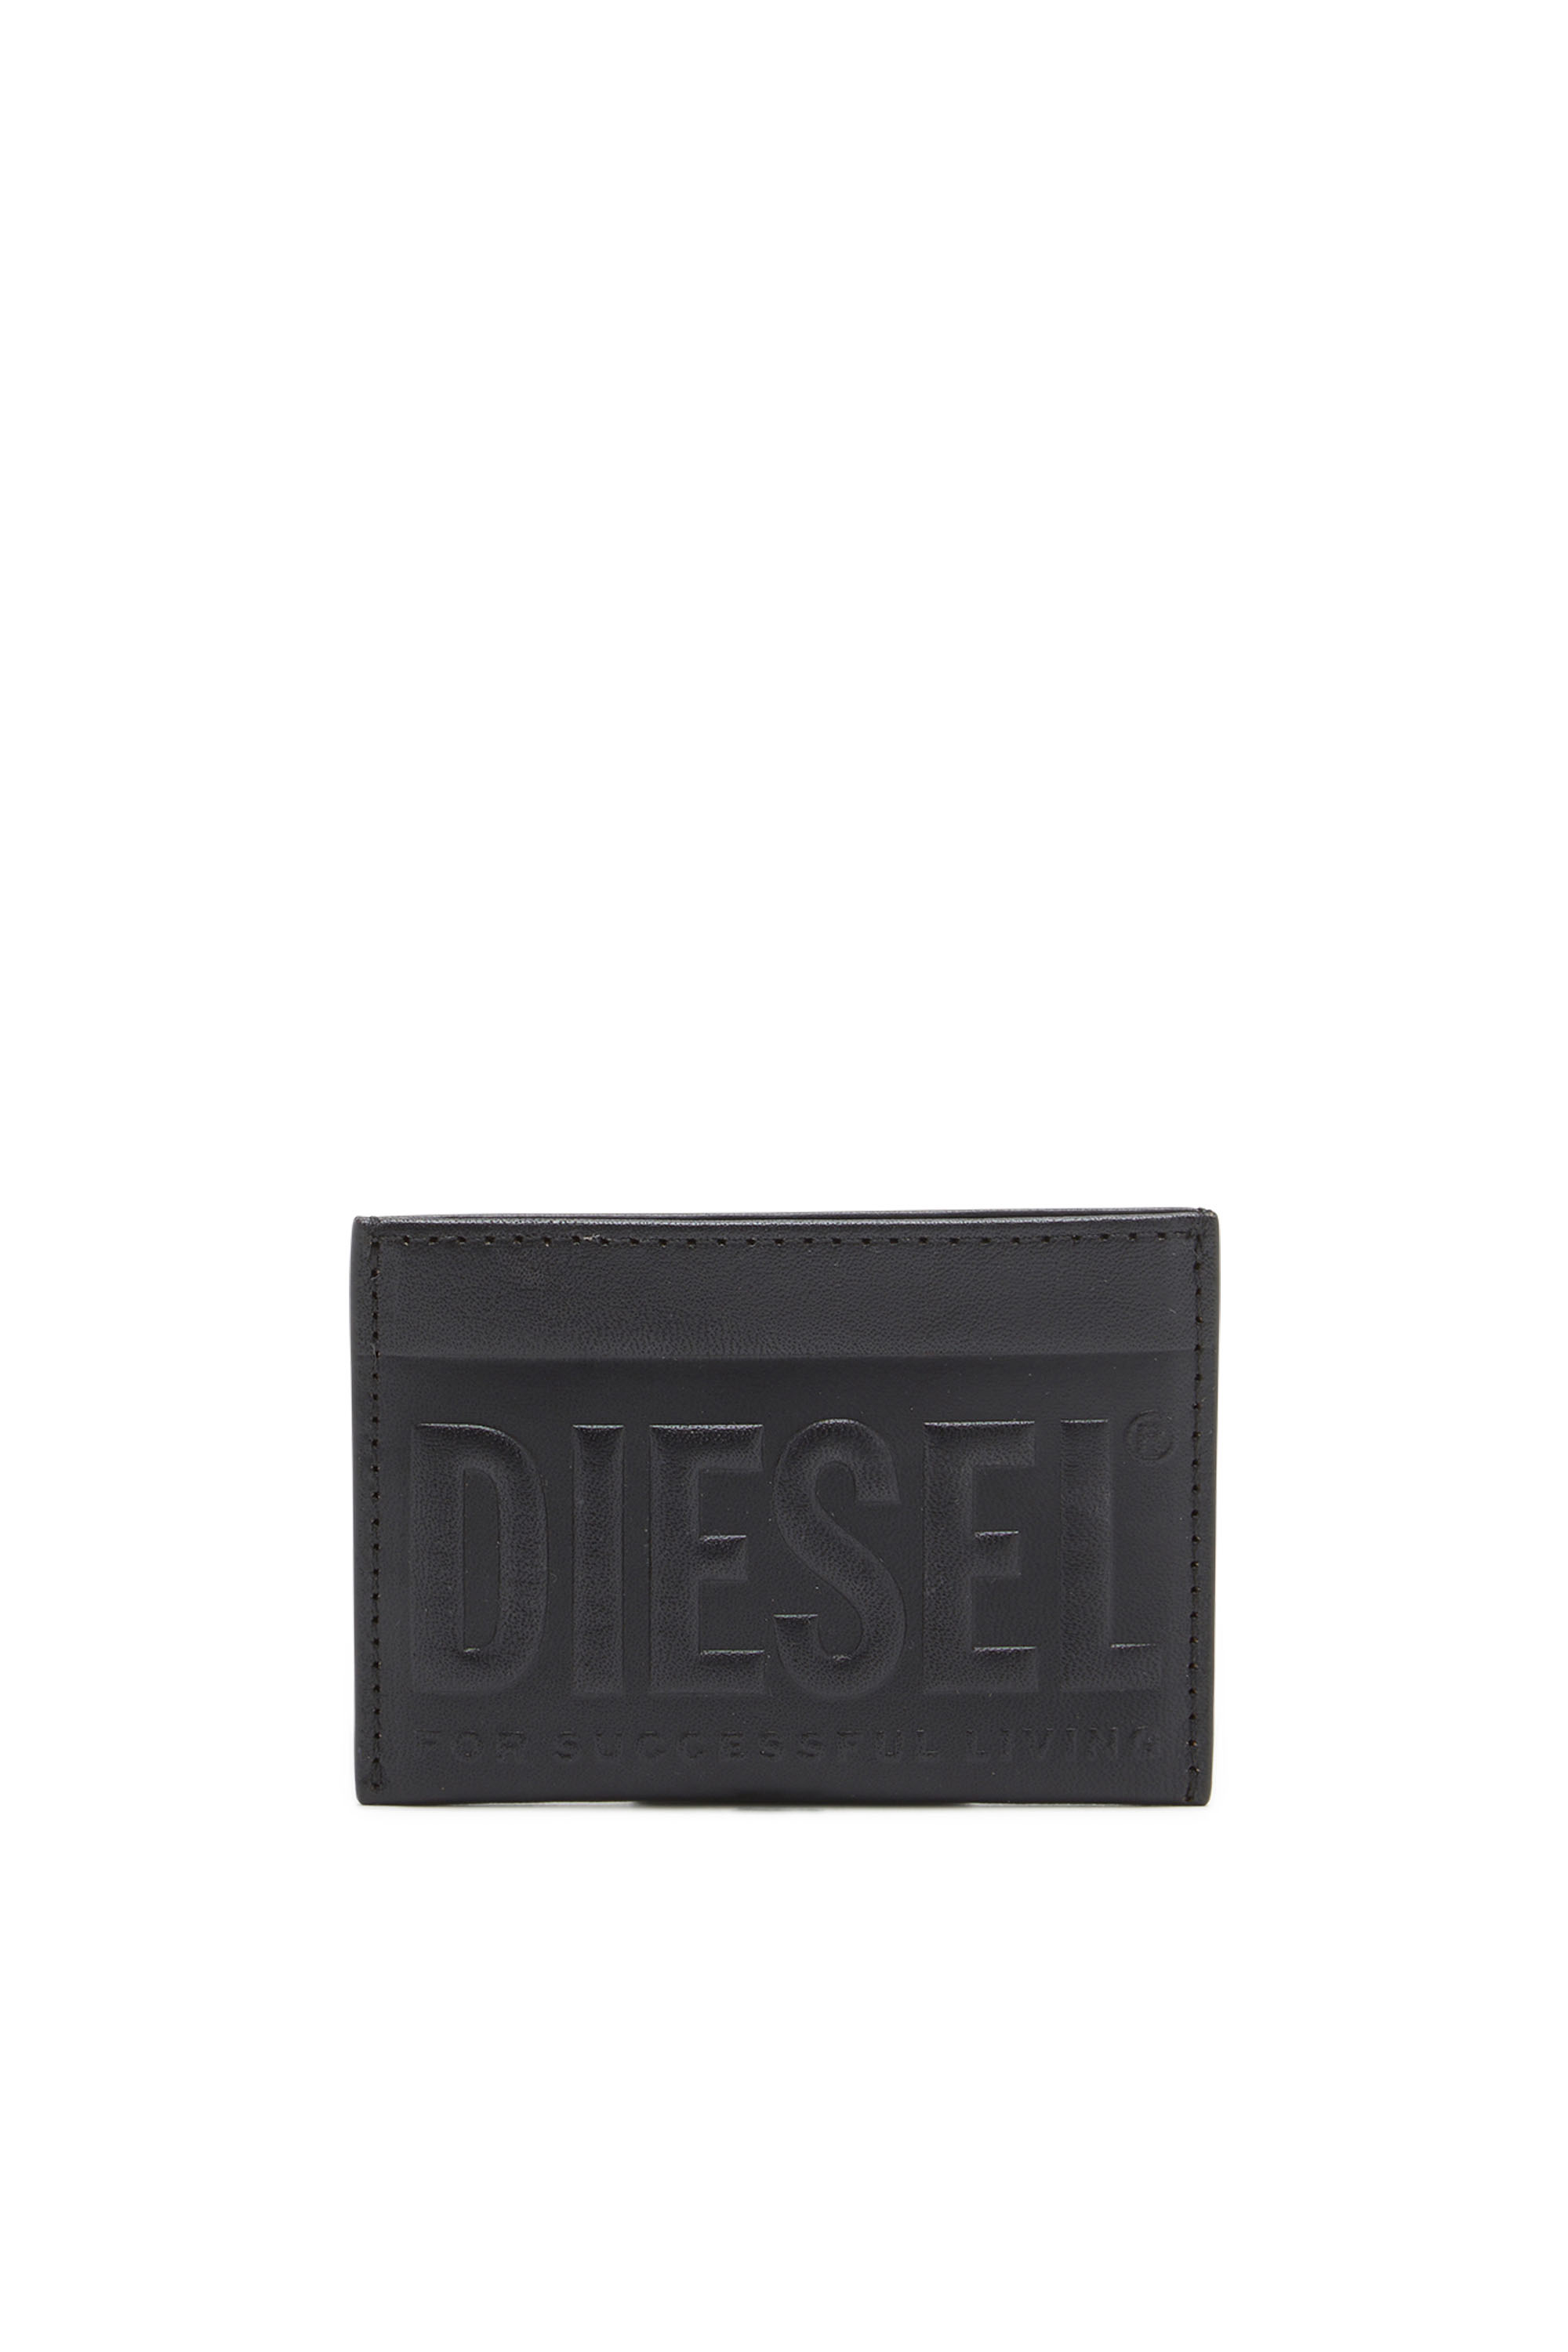 Diesel - Cartera de cuero con cremallera y logotipo en relieve - Monederos Pequeños - Hombre - Negro